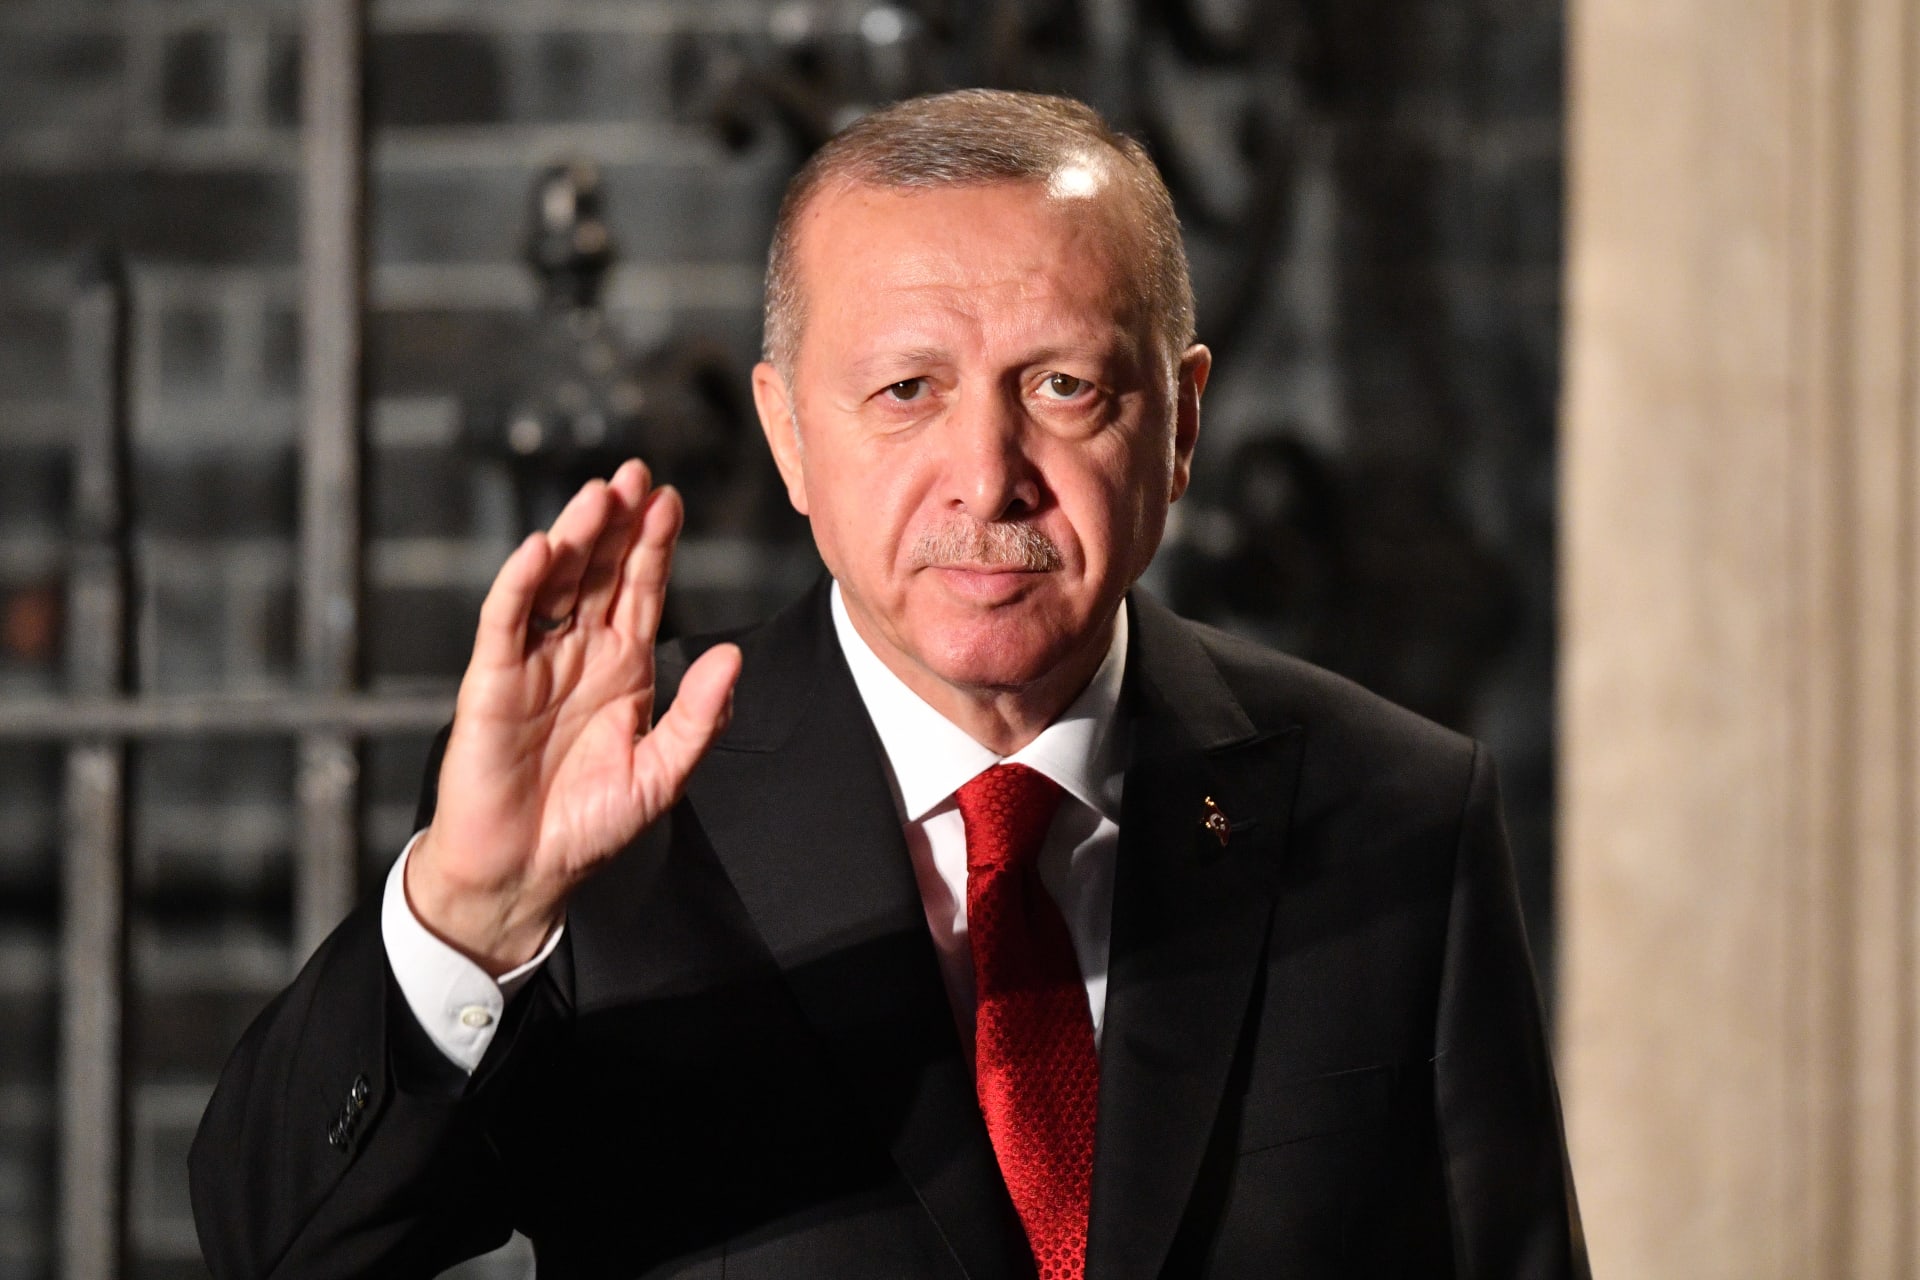 قطري يطلق اسم "أردوغان" على مولوده الجديد: "تيمنا بحفيد السلاطين" 